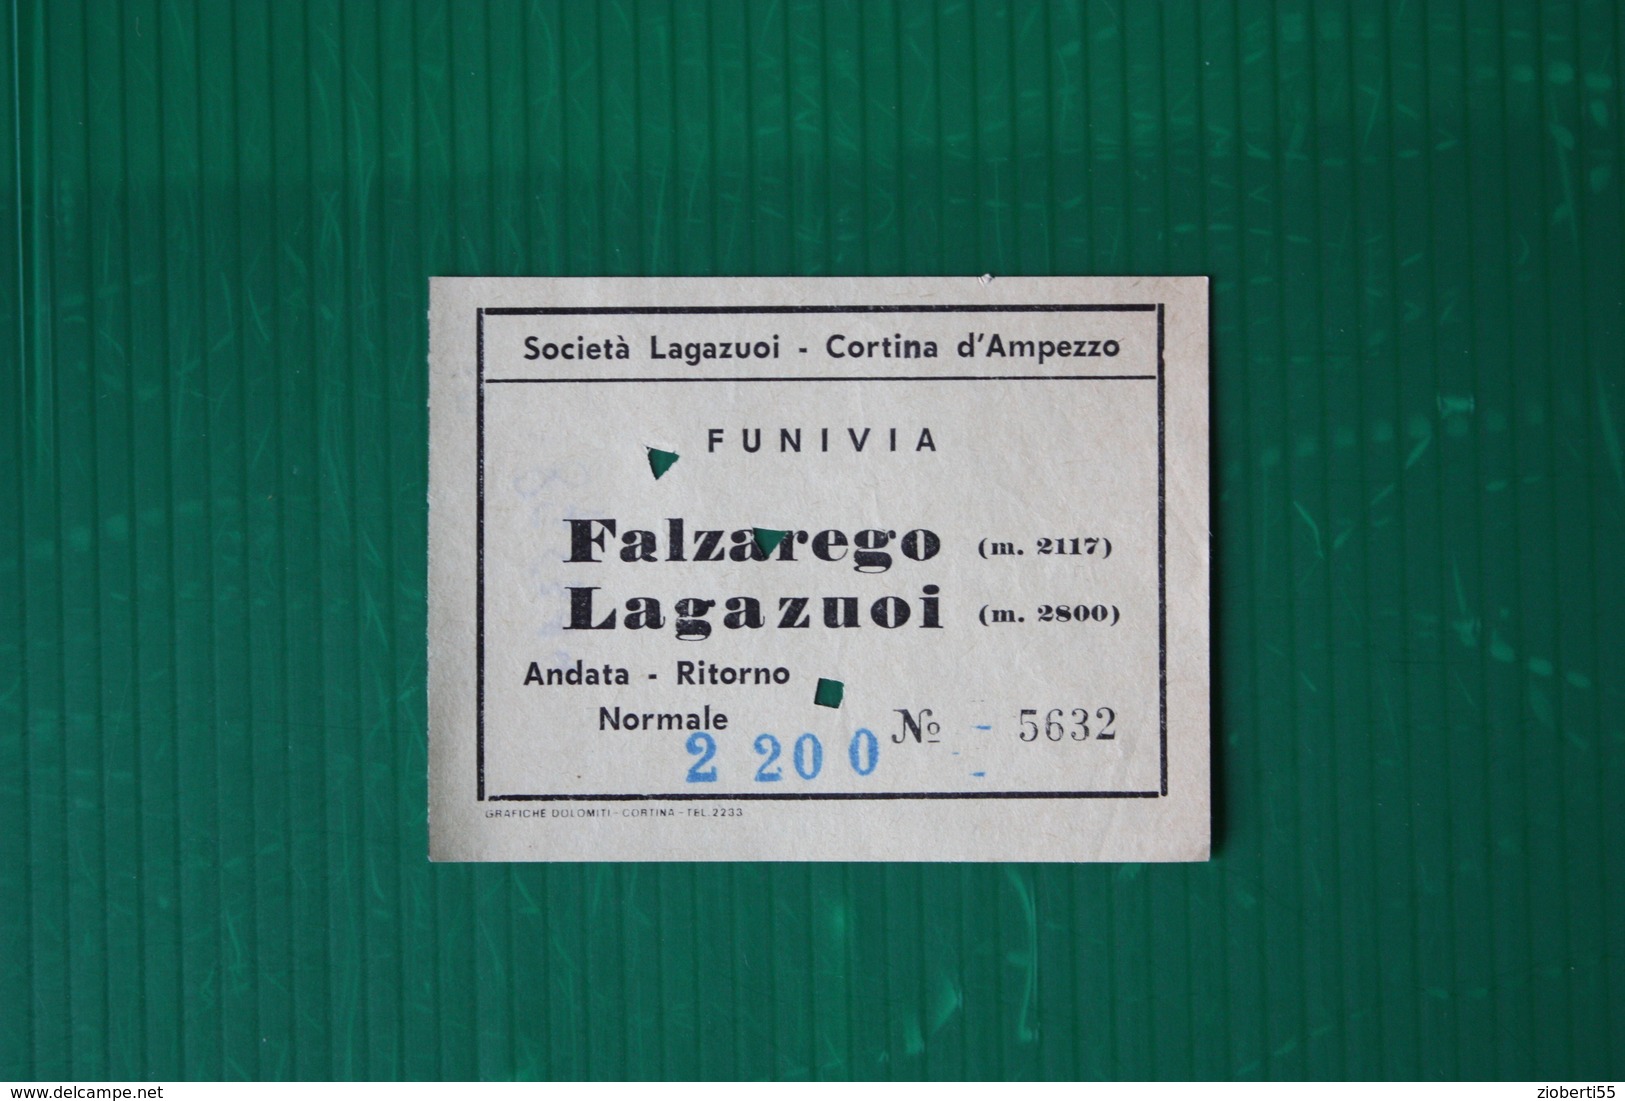 CORTINA D'AMPEZZO - FUNIVIA FALZAREGO-LAGAZUOI - 1969 - Winter Sports